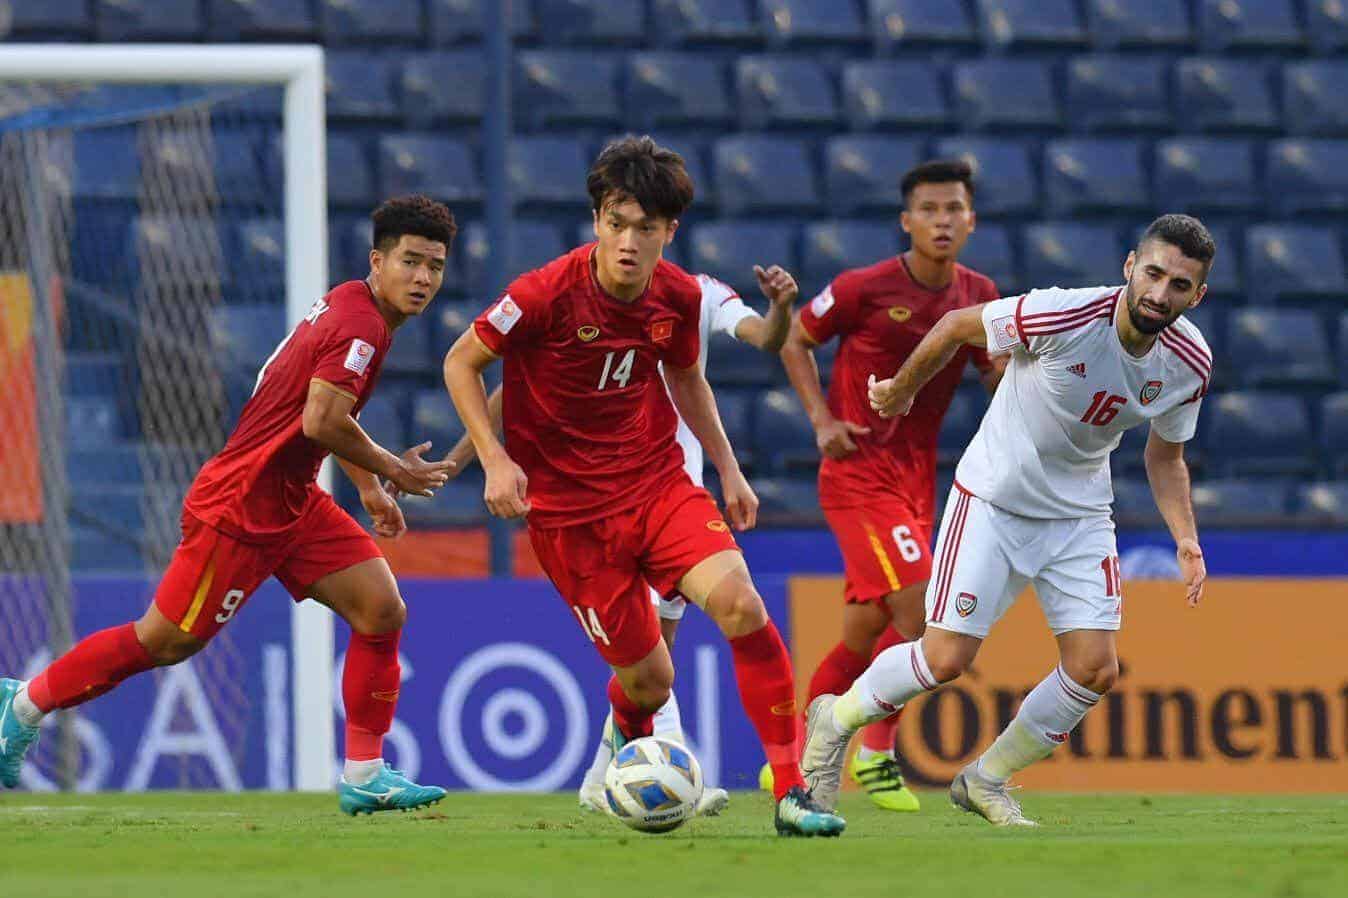 Soi kèo nhà cái U23 Jordan vs U23 Việt Nam, 13/01/2020 - Vòng chung kết U23 Châu Á 2020